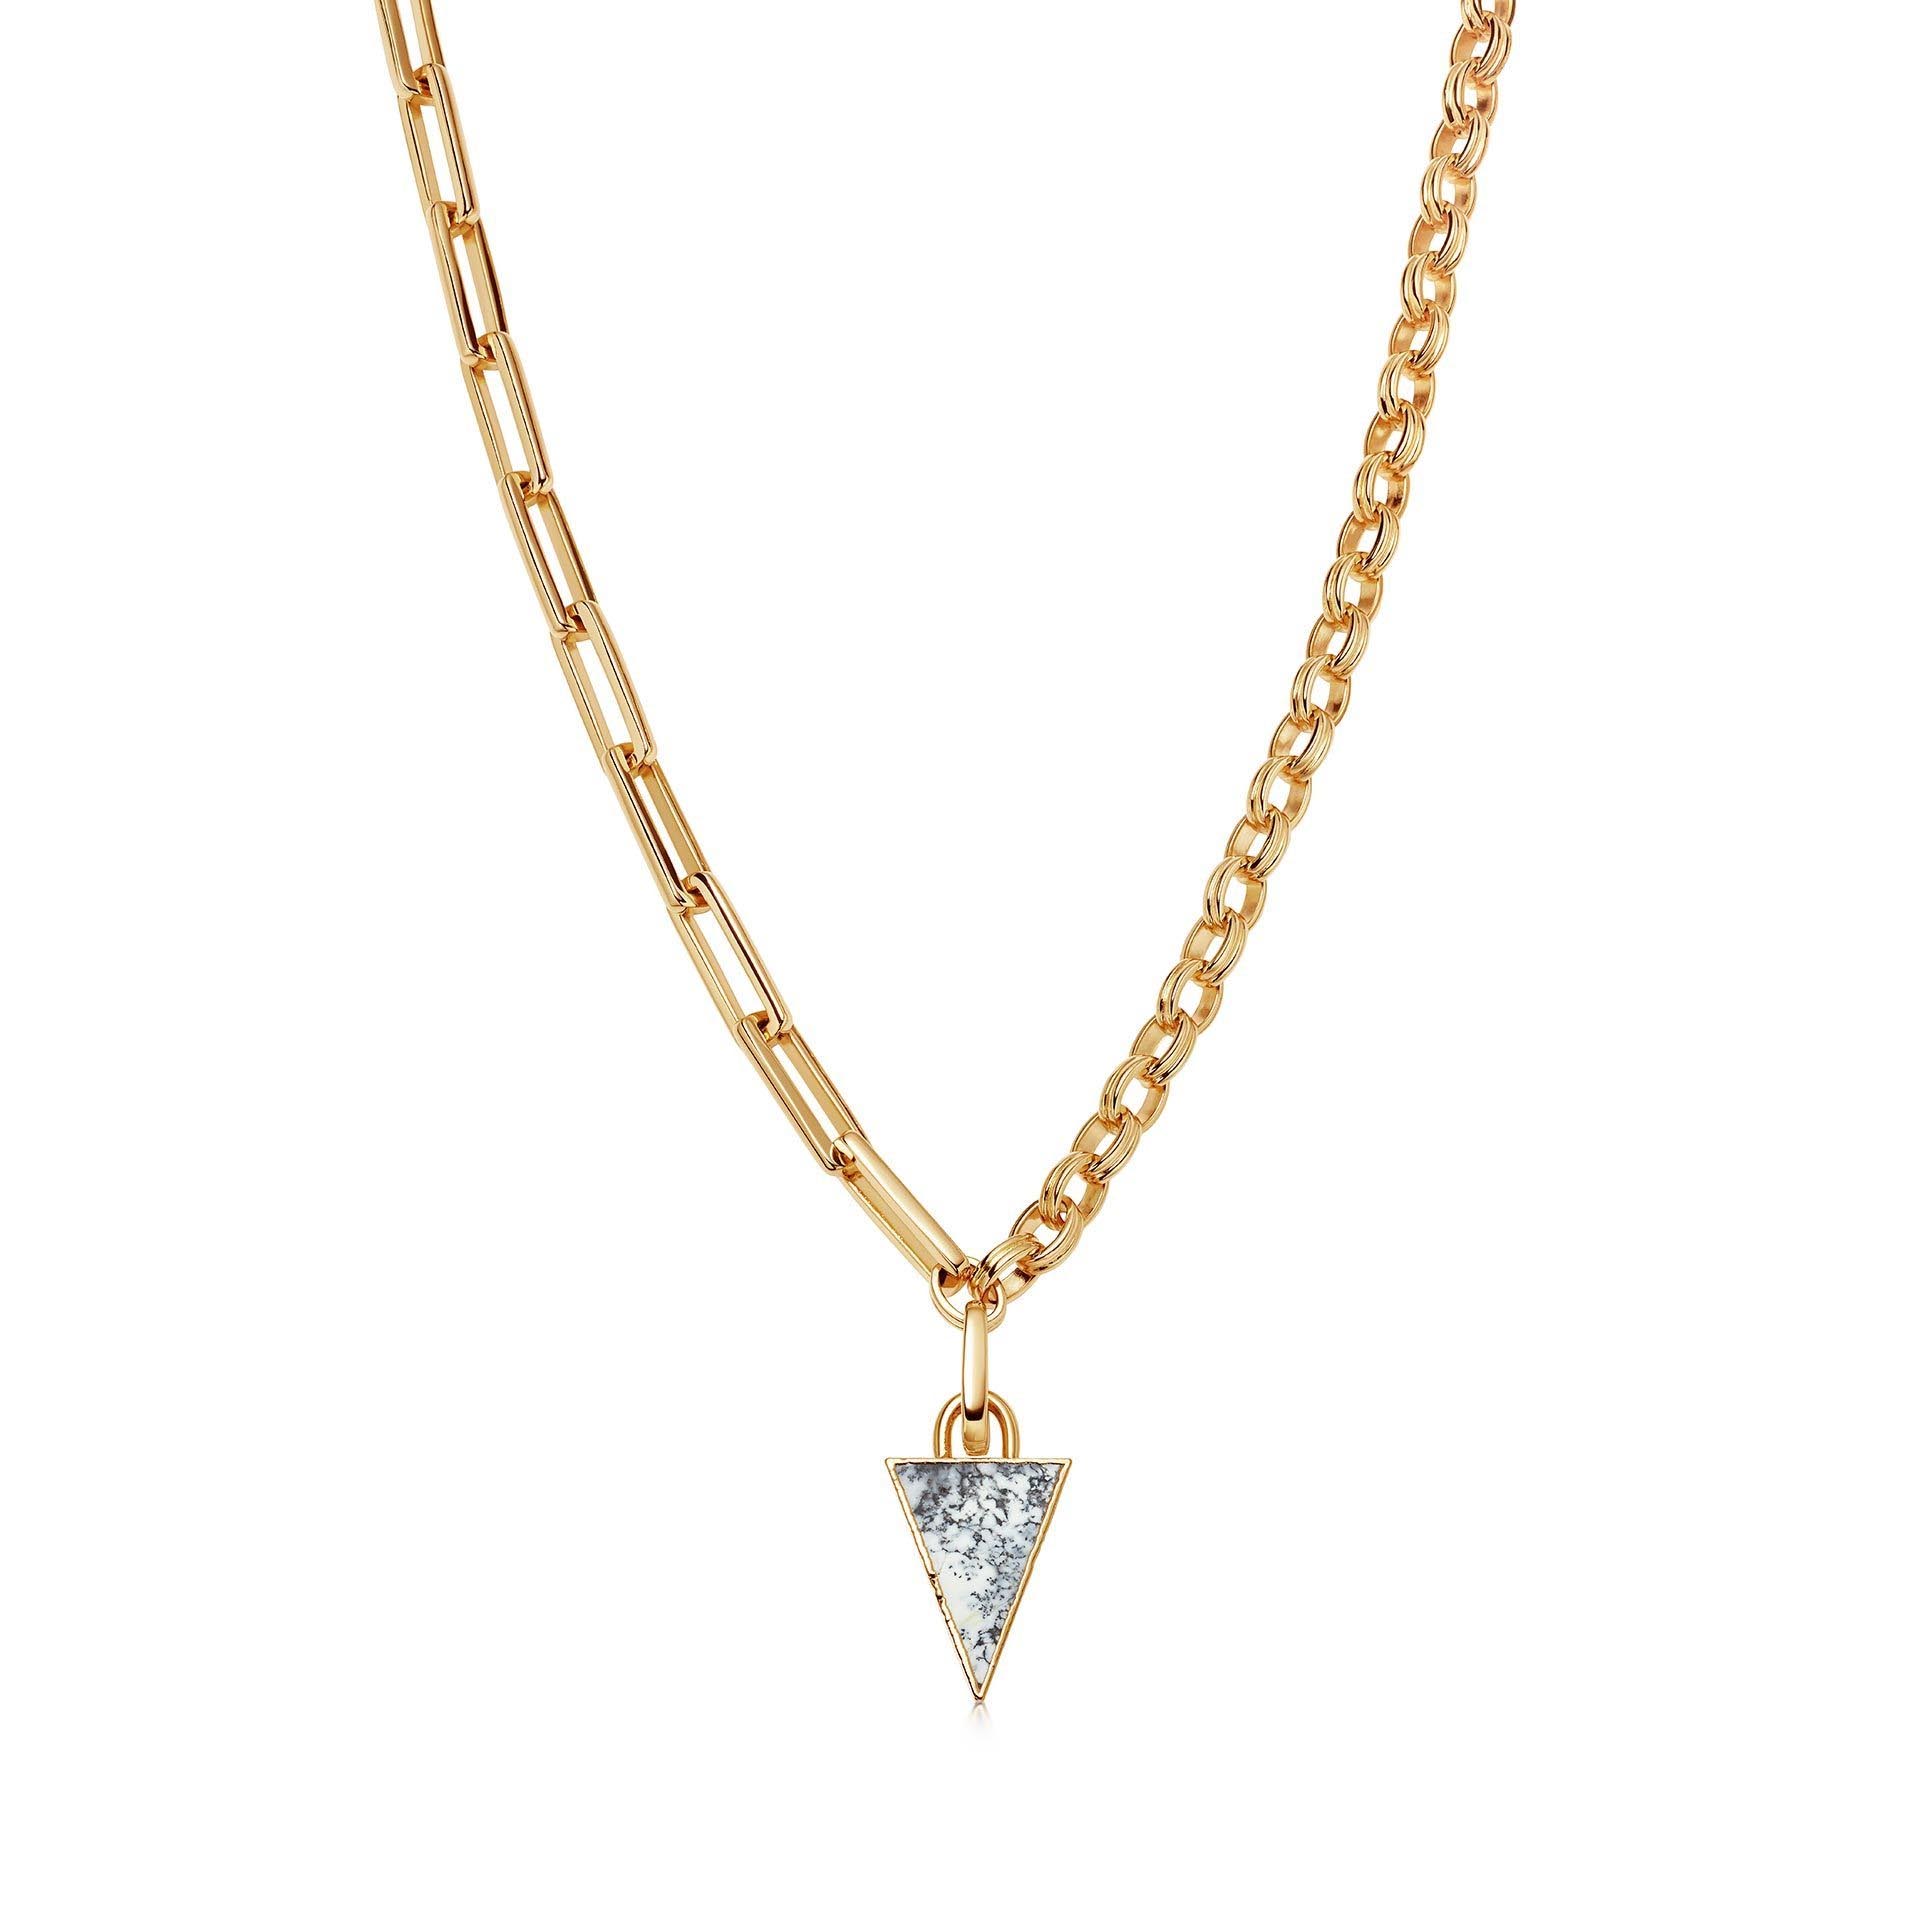 Velkoobchodní zakázkový španělský náhrdelník Charm 18ct OEM/ODM Jewelry Gold Vermeil On Sterling Silver OEM výrobce šperků